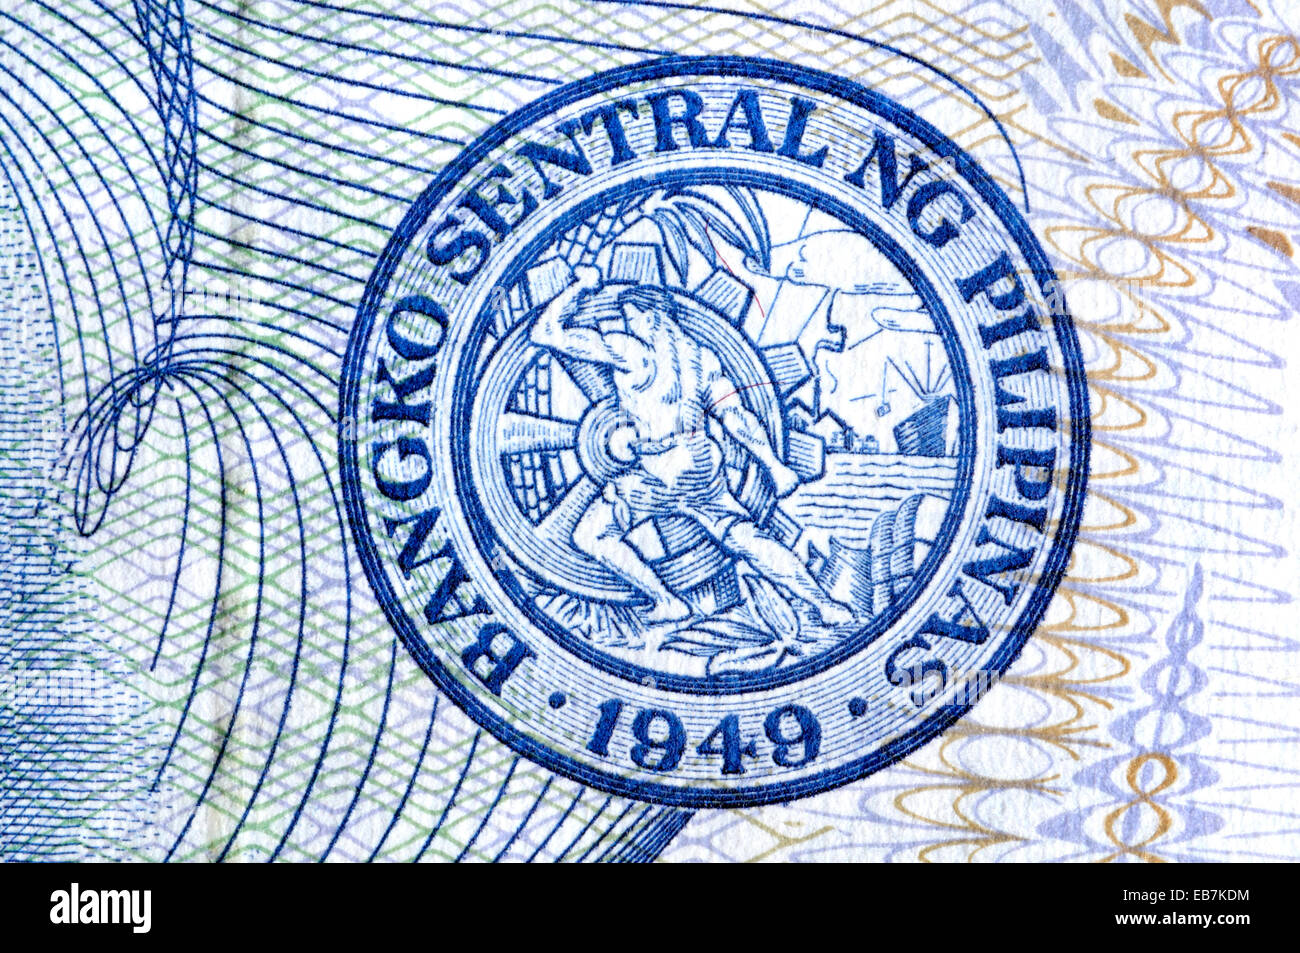 Dettaglio di una banconota filippino che mostra anti-contraffazione la stampa dettagli e la tenuta delle Filippine banca centrale Foto Stock